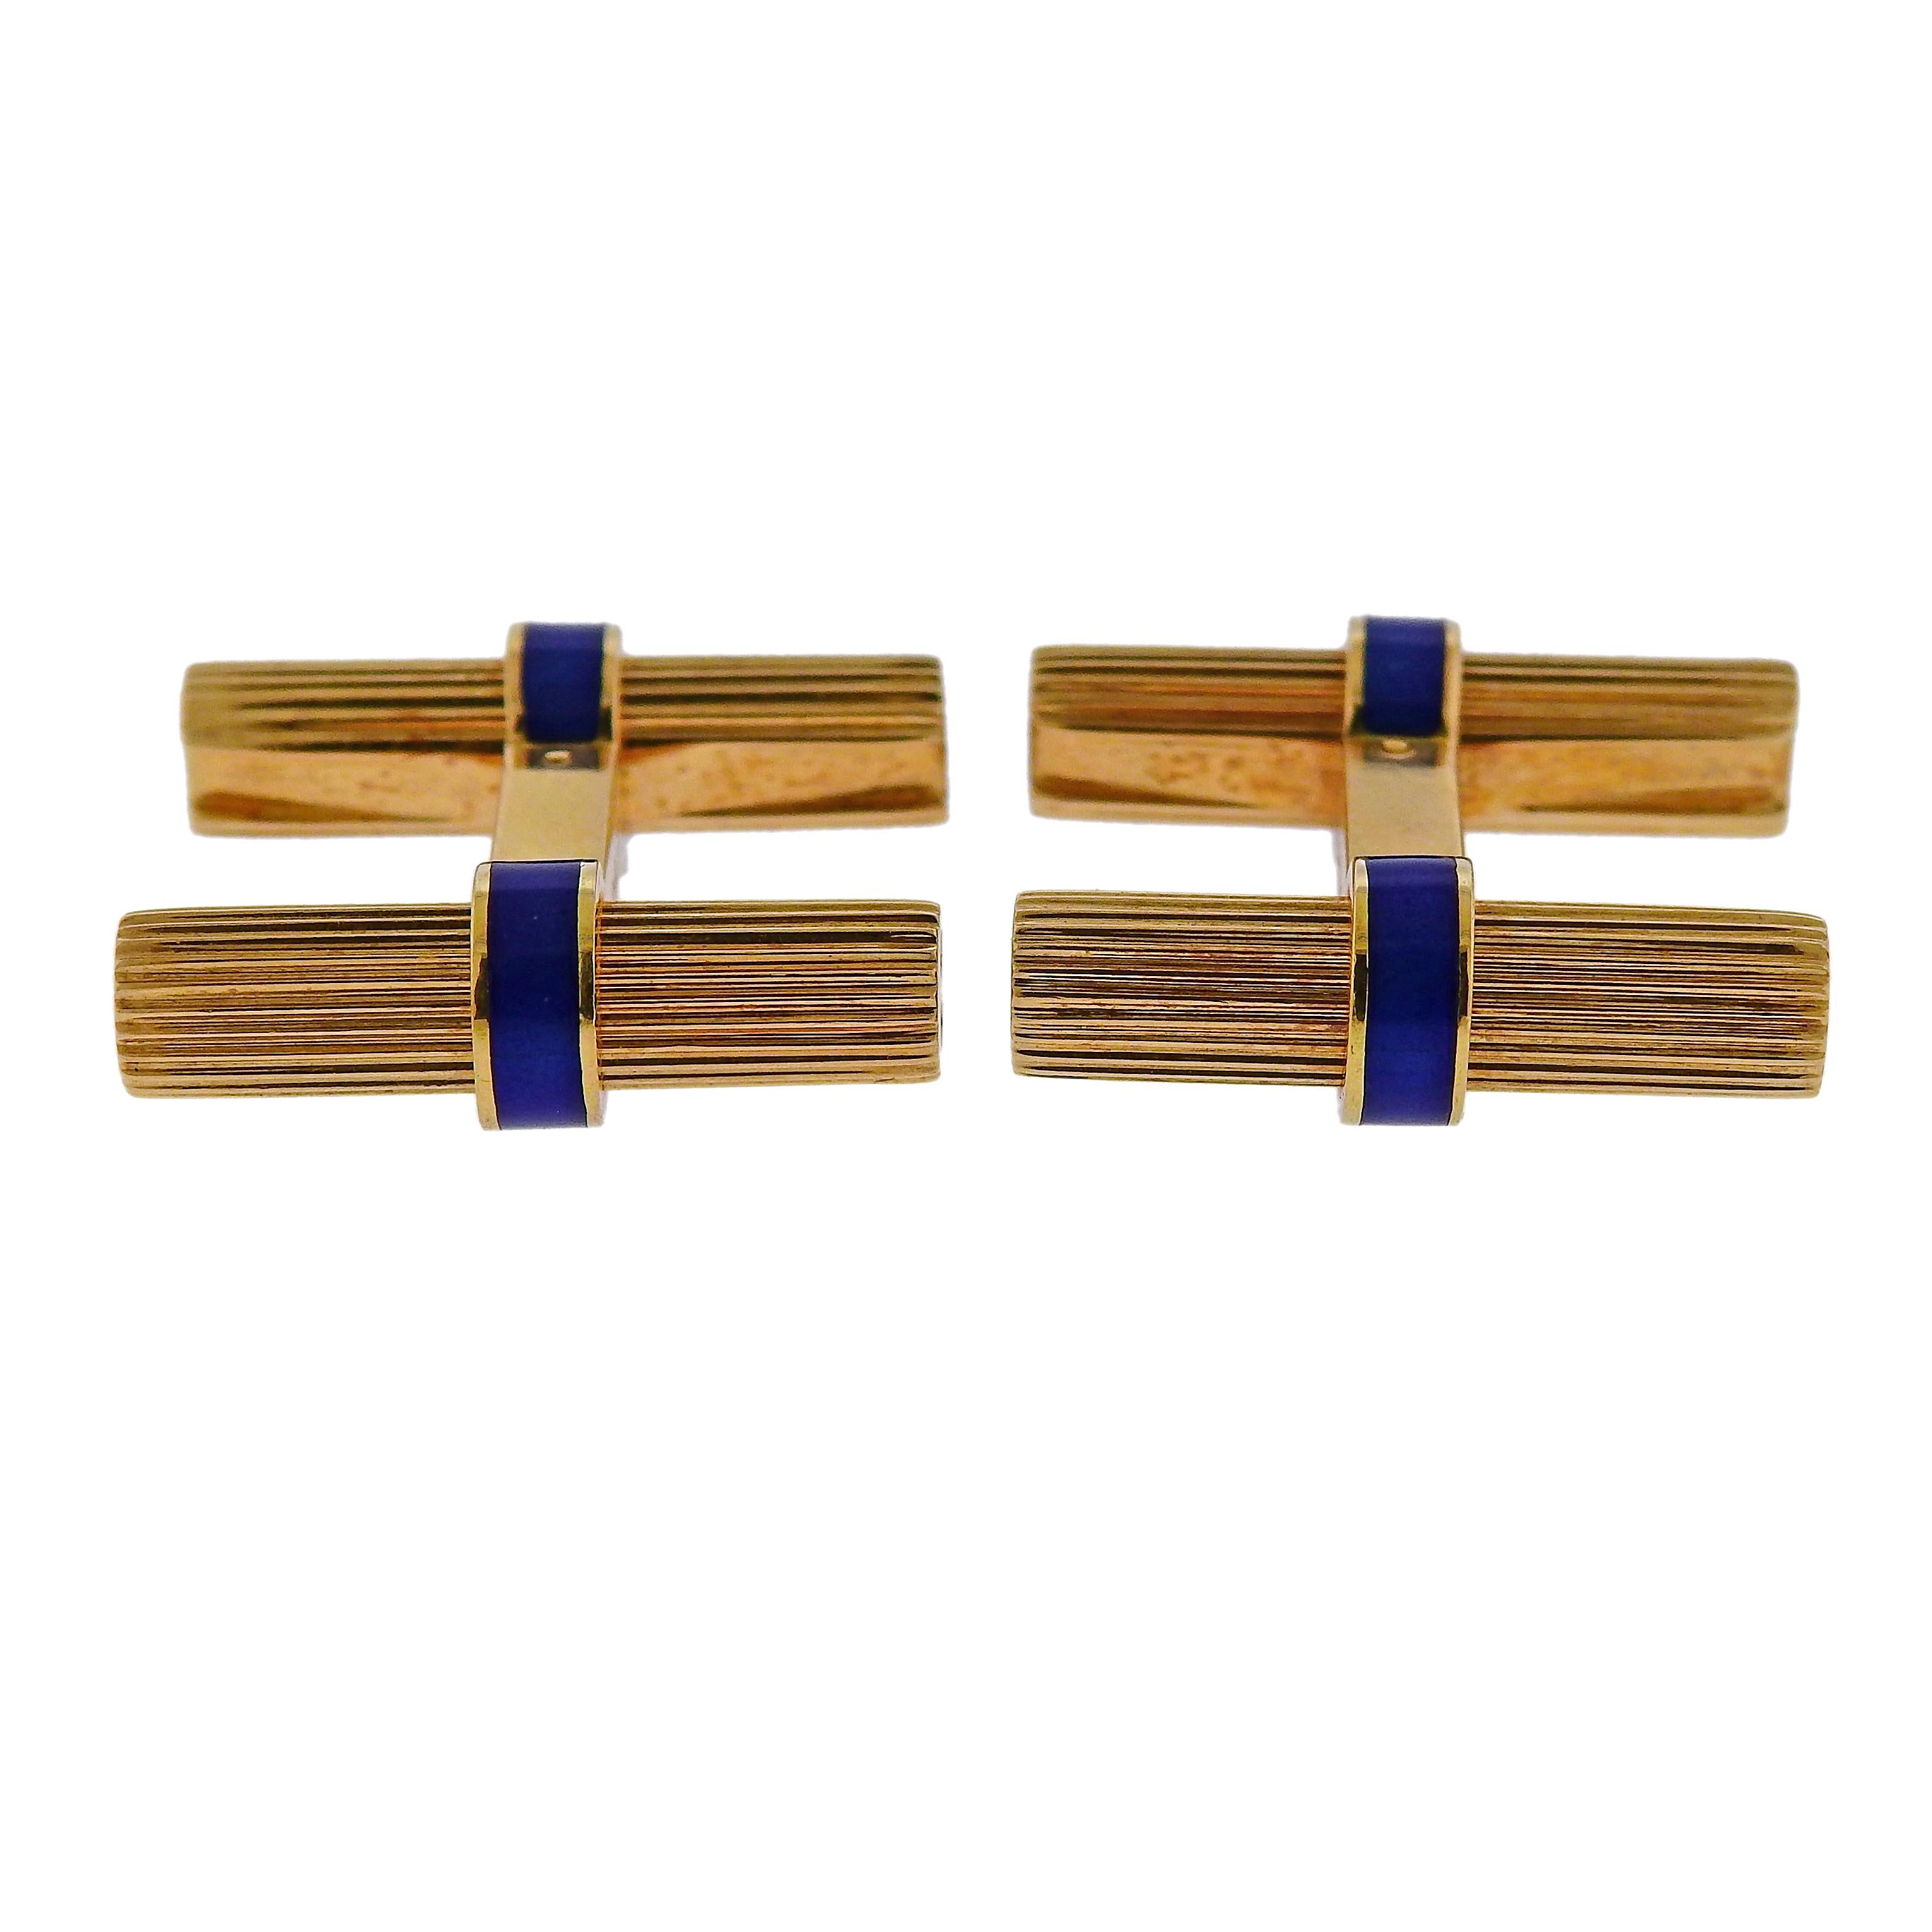 Paar klassische Manschettenknöpfe von Cartier aus 18 Karat Gold, verziert mit blauem Email. Jeder Manschettenknopf ist 22 mm x 7 mm groß, das Gesamtgewicht beträgt 13,6 Gramm. Markiert Cartier, 750, 673059, OR750.